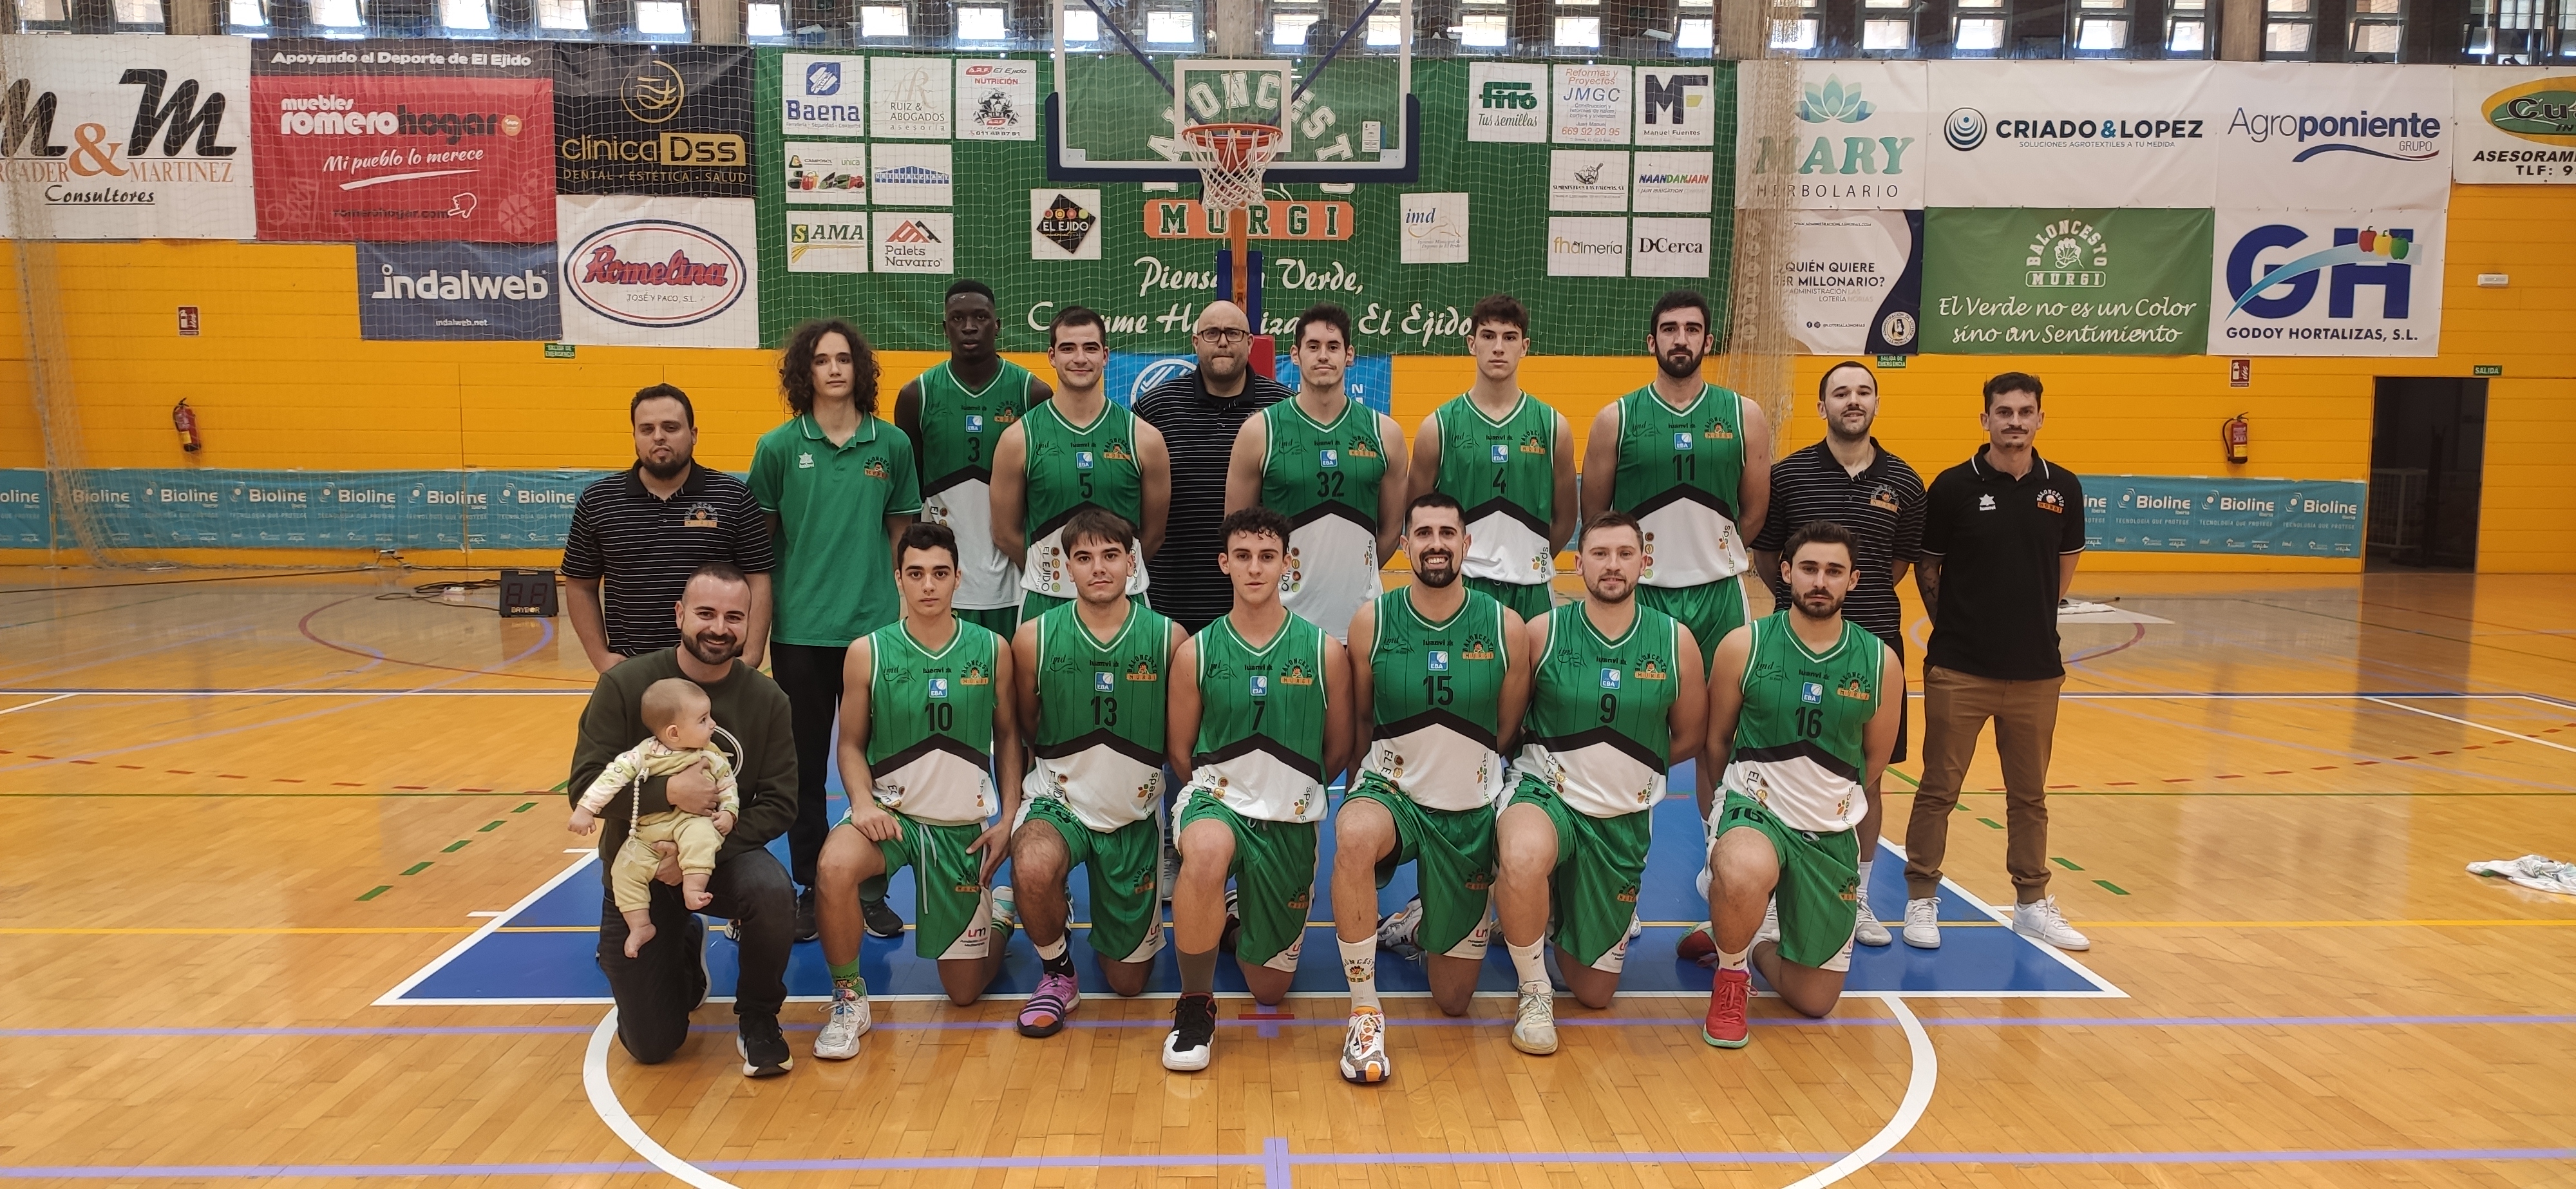 Baloncesto Murgi vence al líder, el Jaén FS, con las exhibiciones de los canteranos Berni y Yélamos